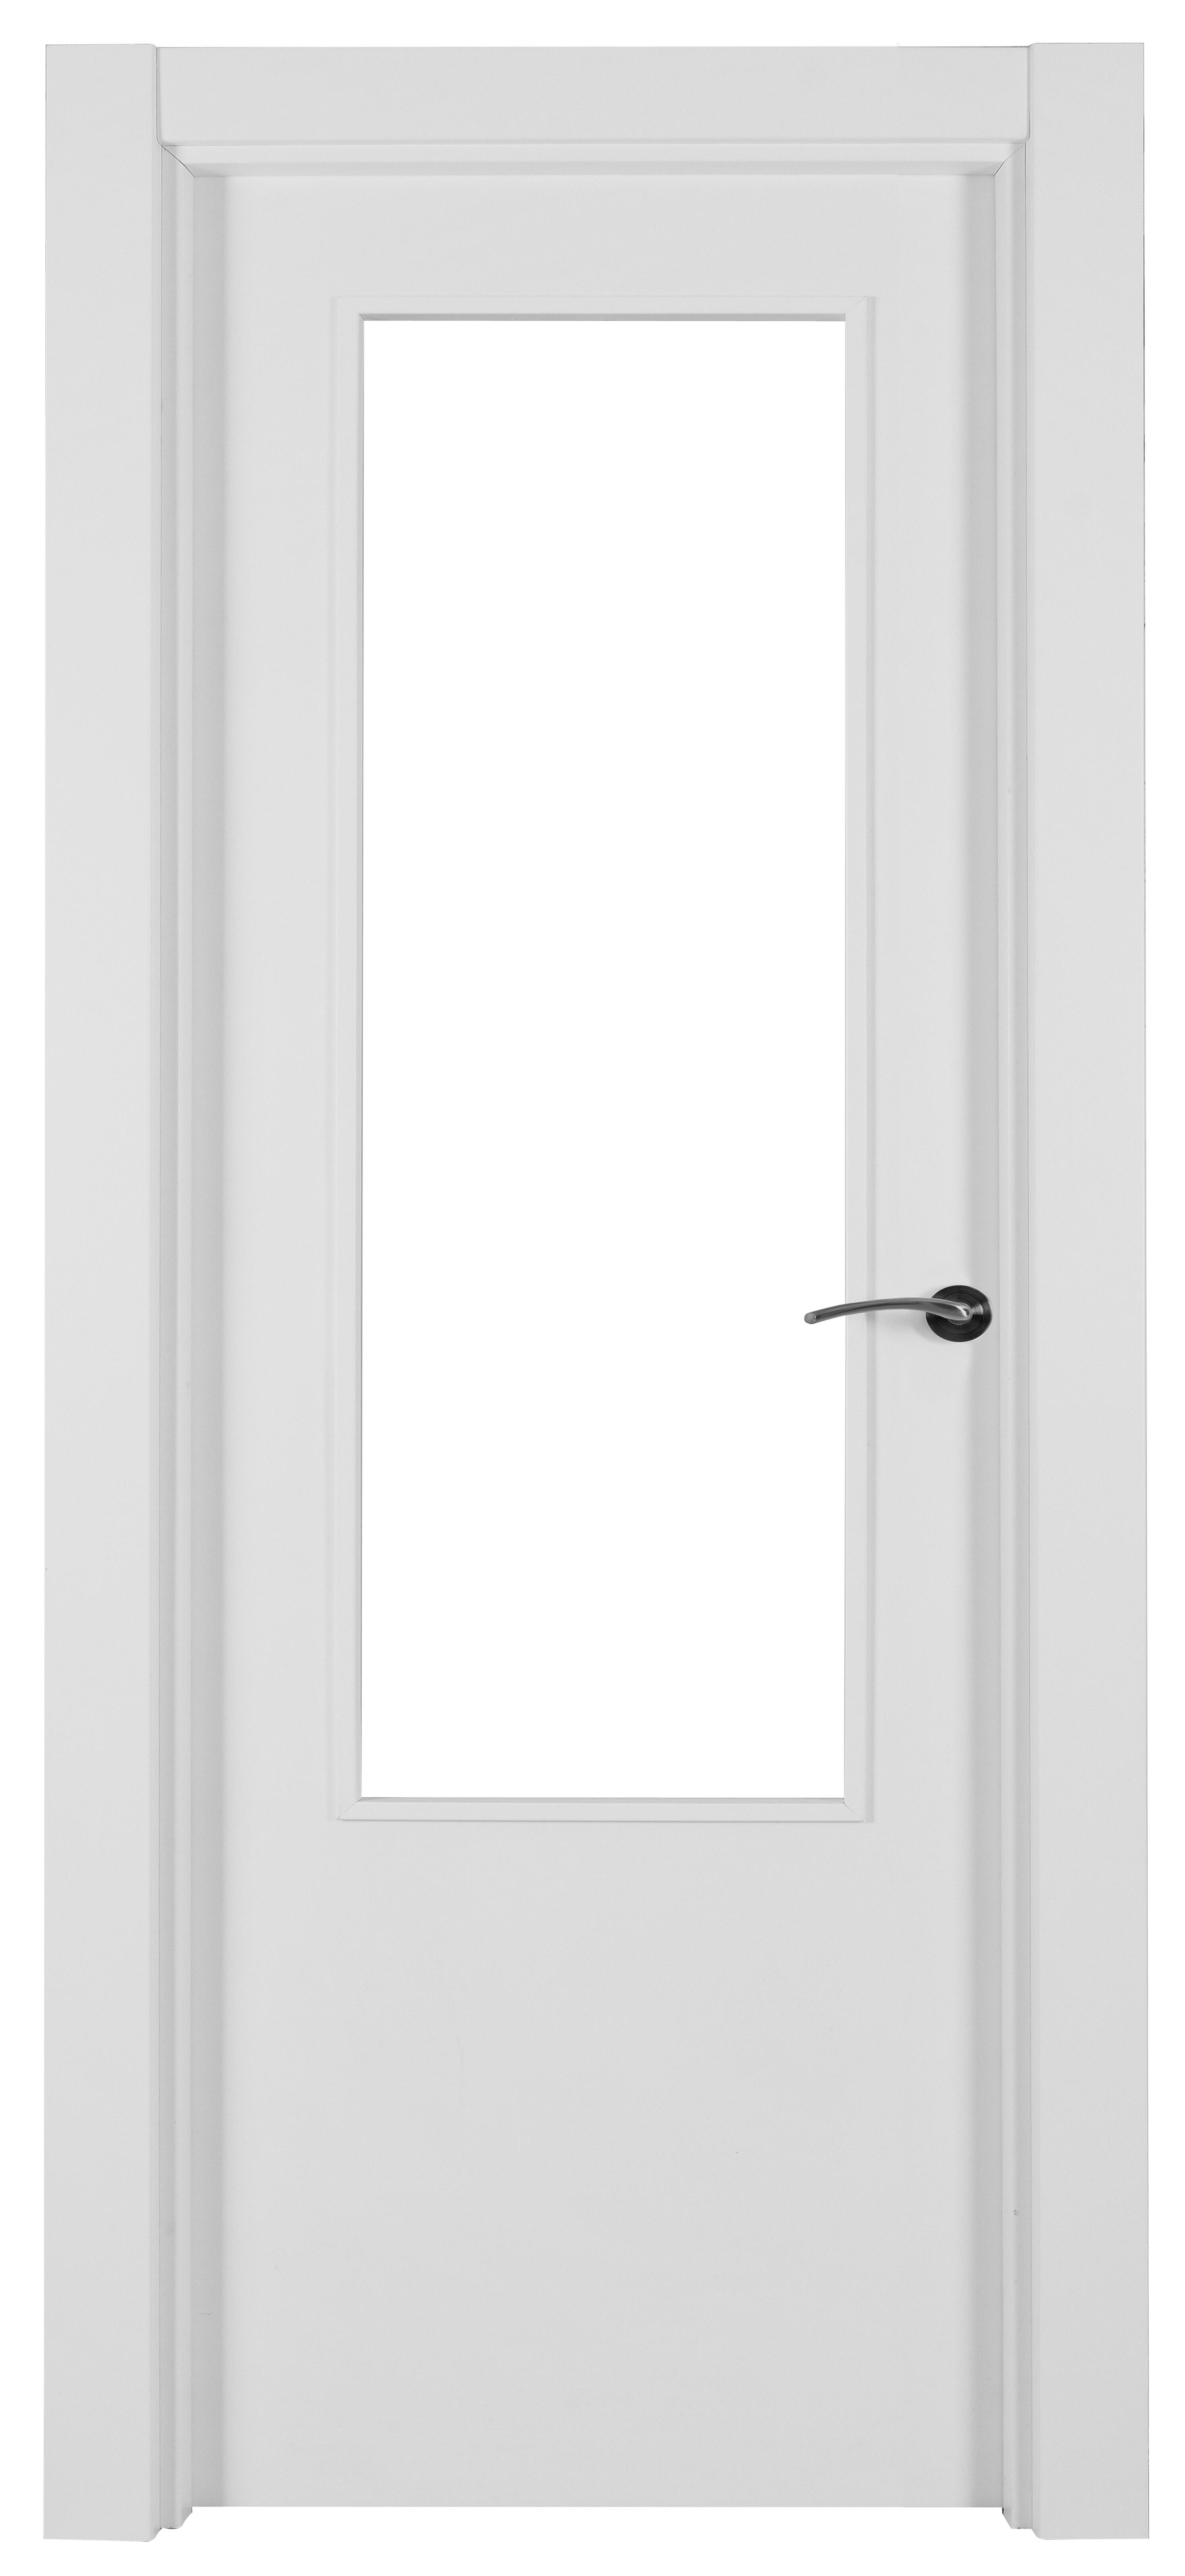 Puerta abatible lyon blanca aero blanco izquierda con cristal de 110x30 y 82.5cm